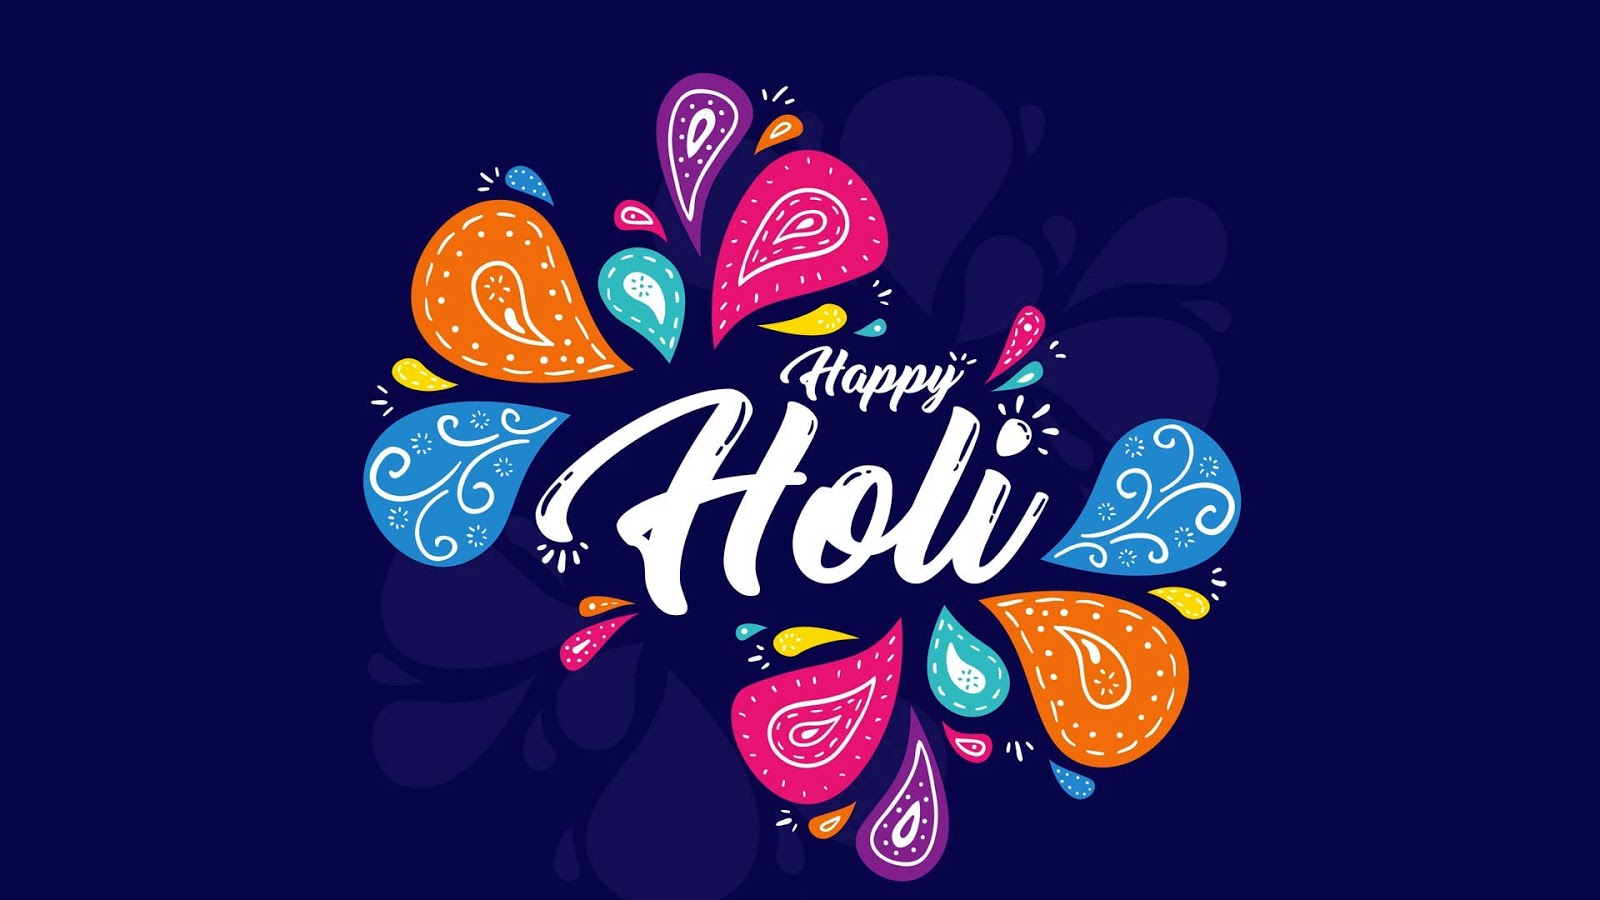 Hd Wallpaper Happy Holi Images 2019 Download - HD Wallpaper 